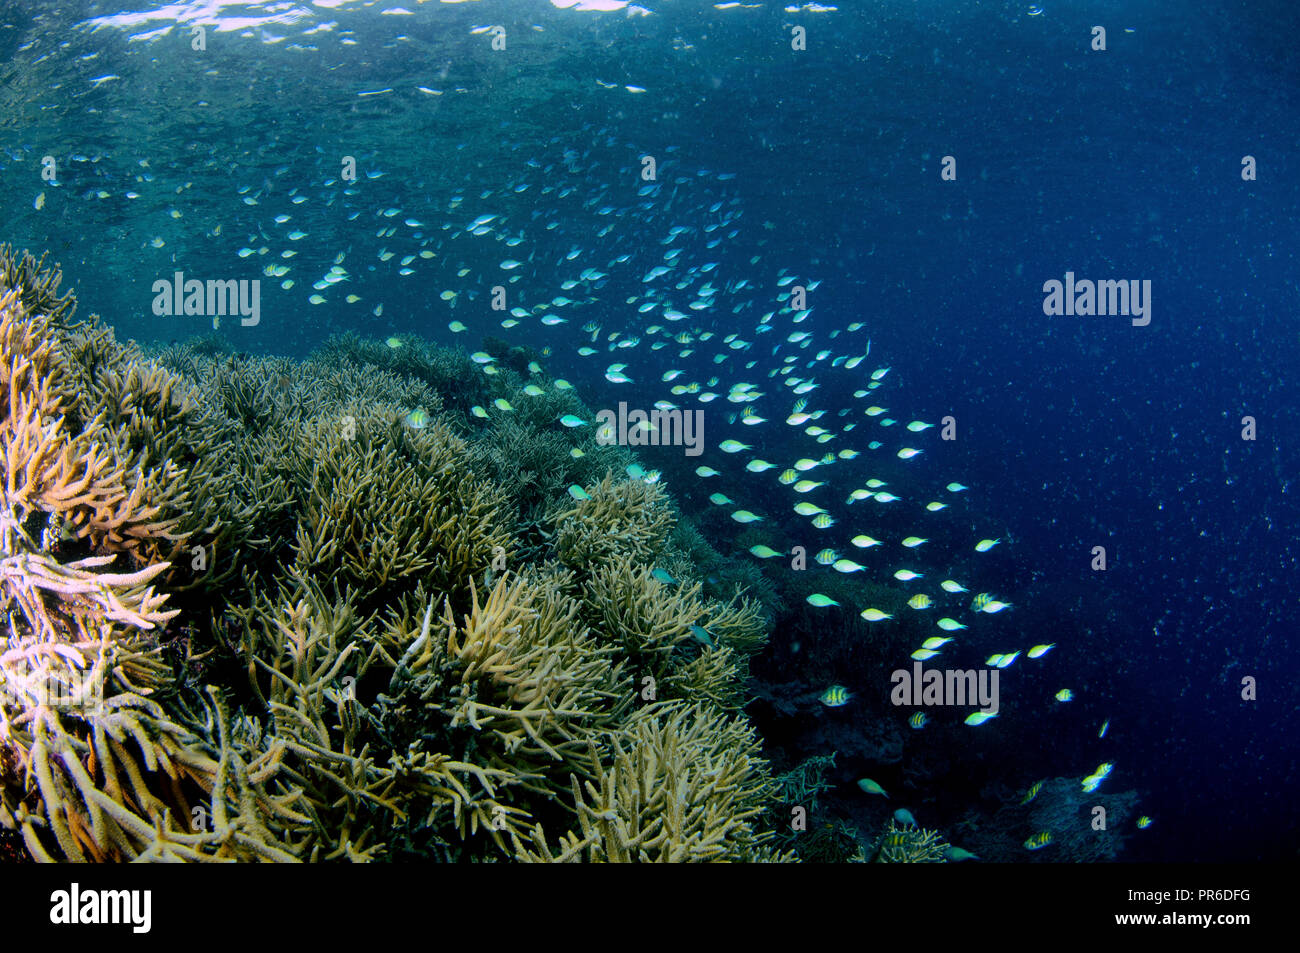 Unberührten Korallenriff, vor allem Acropora sp., mit zusammenrechnung der Blau-grünen chromis, Chromis viridis, Pohnpei, Föderierte Staaten von Mikronesien Stockfoto